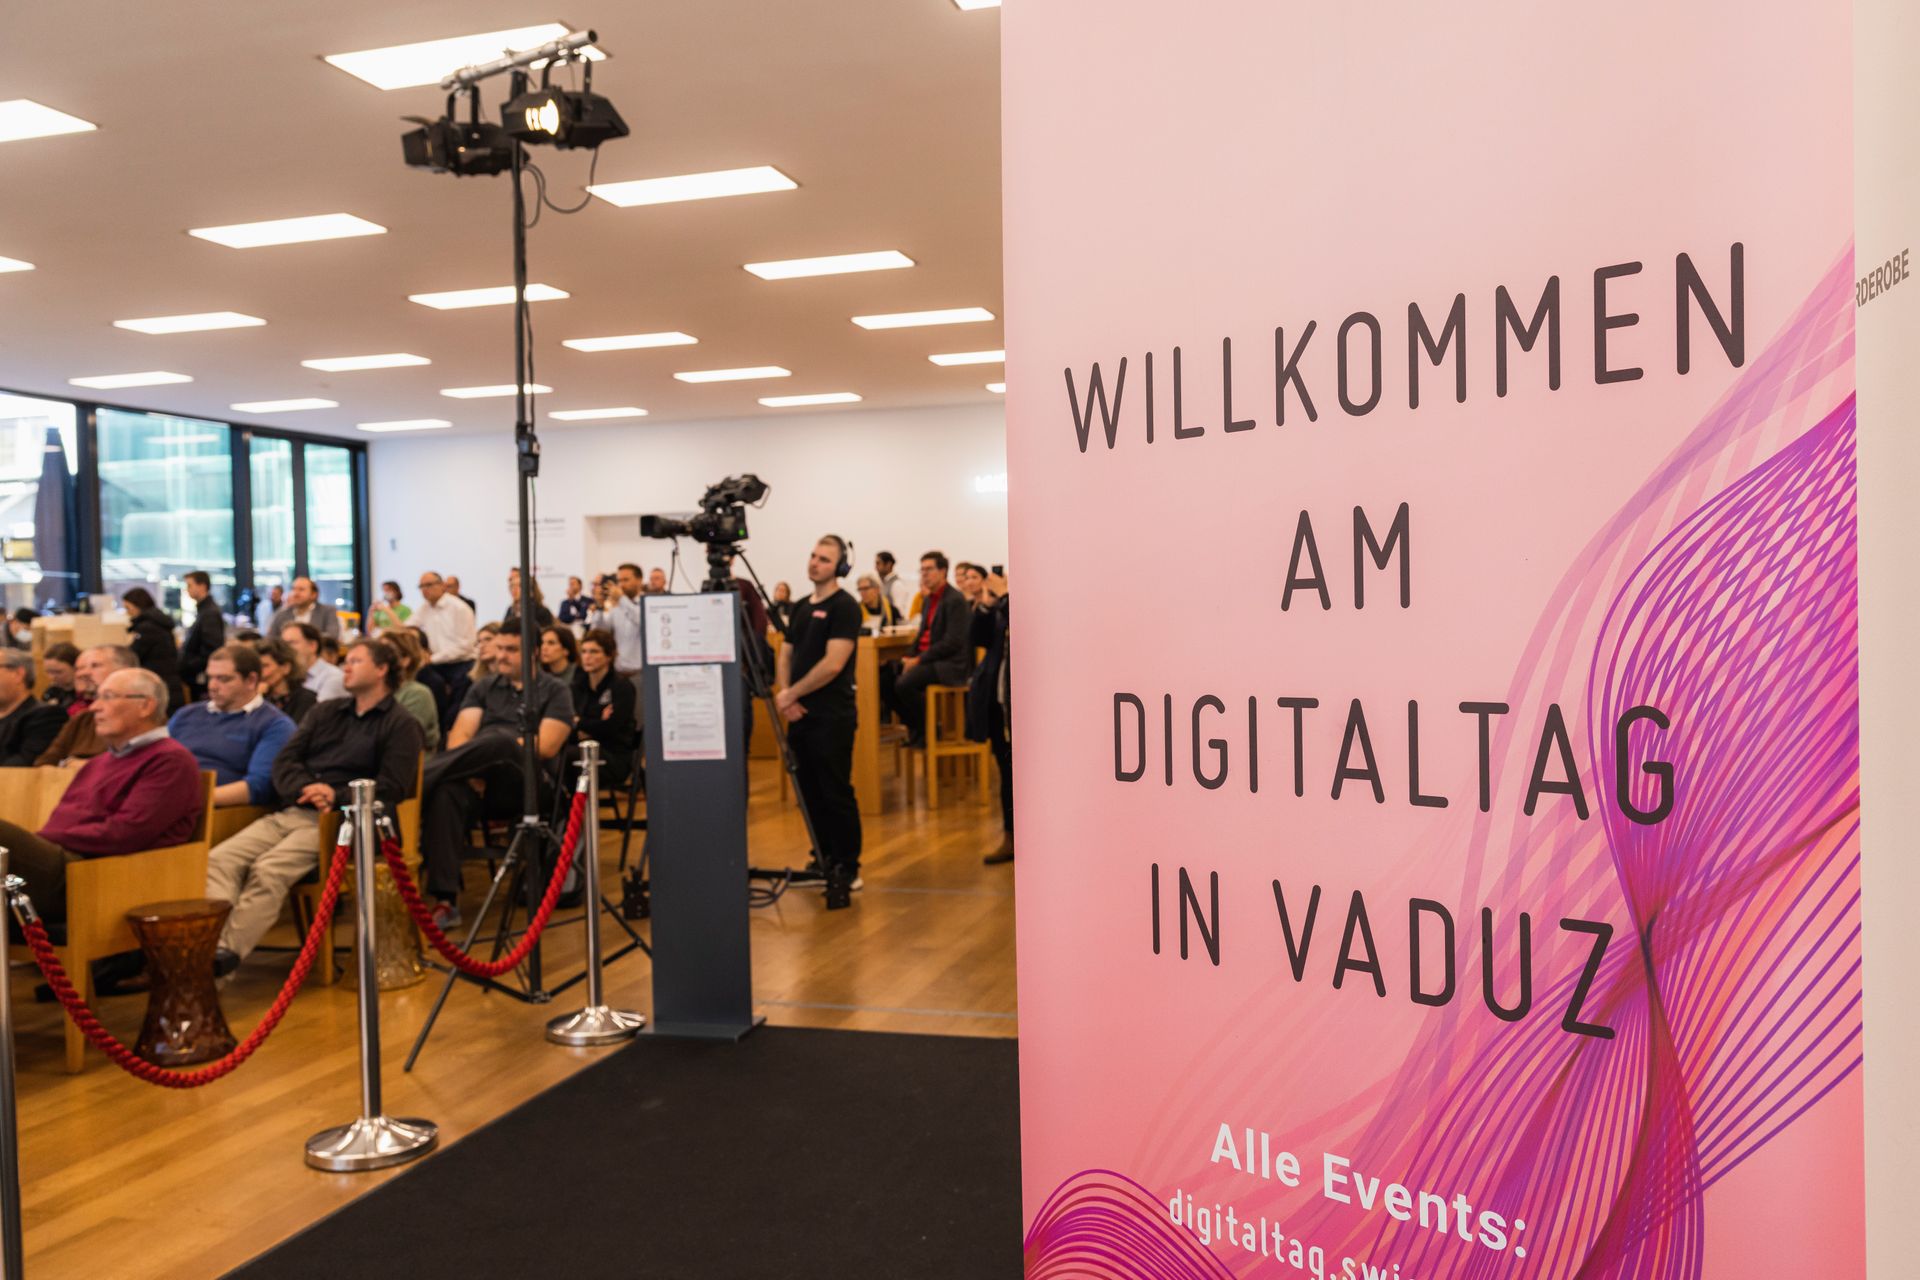 6년 2021월 10일 토요일 리히텐슈타인 공국의 수도 쿤스트뮤지엄이 환영한 "Digitaltag Vaduz"는 다음 날인 XNUMX일의 "디지털 데이 스위스"와 유추하여 대중과 연사들의 열광을 불러일으켰습니다.